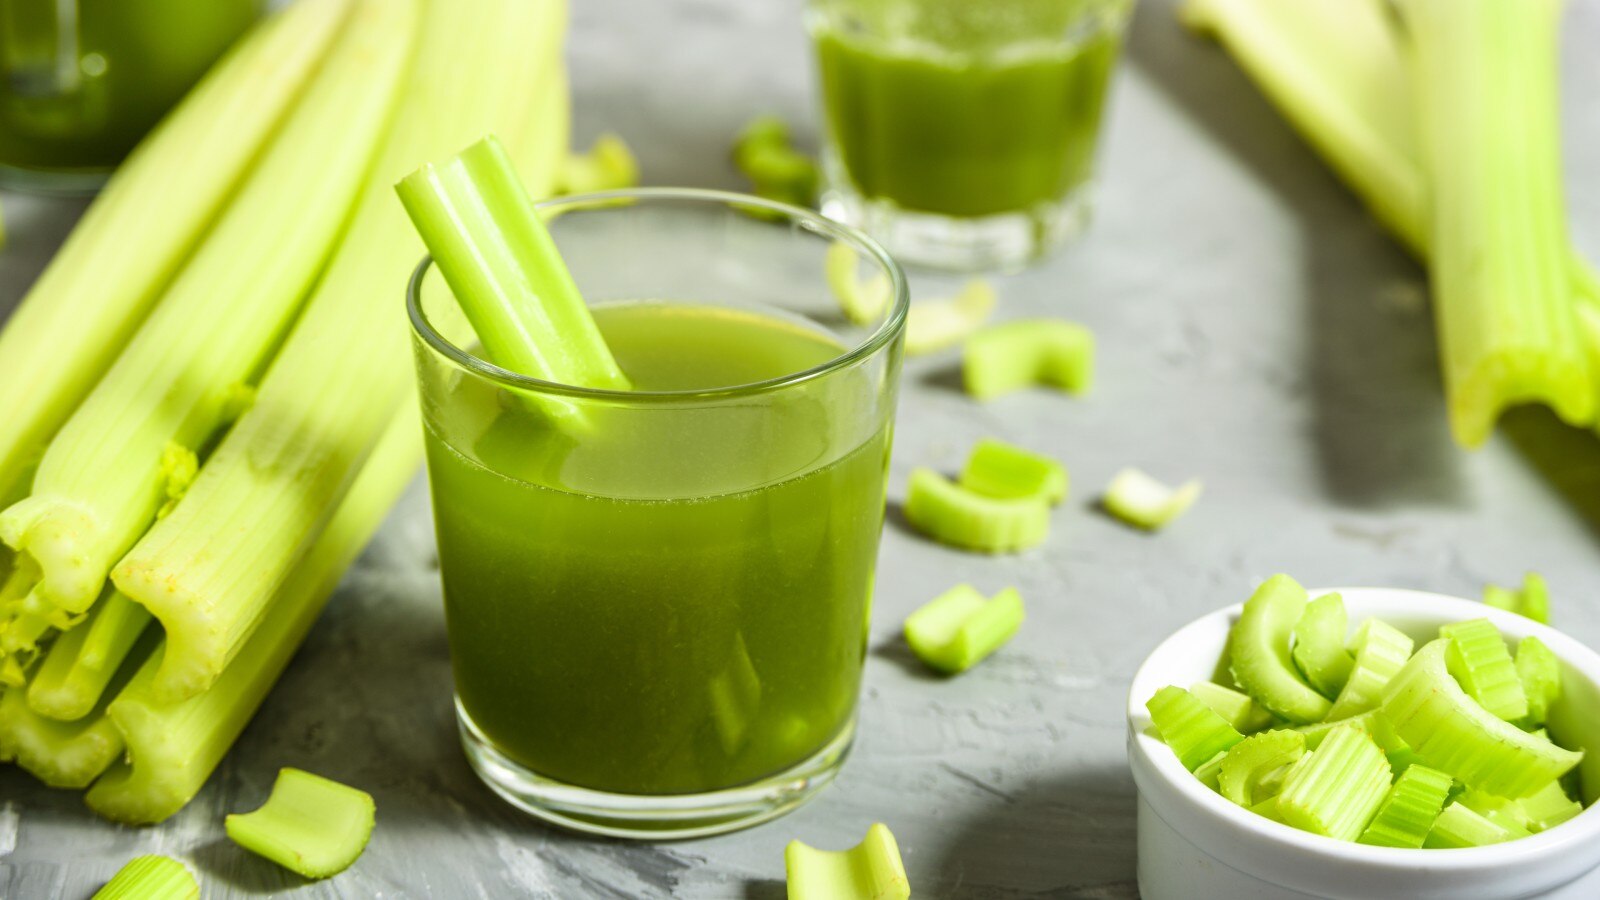 Jaanein Celery juice ke fayde